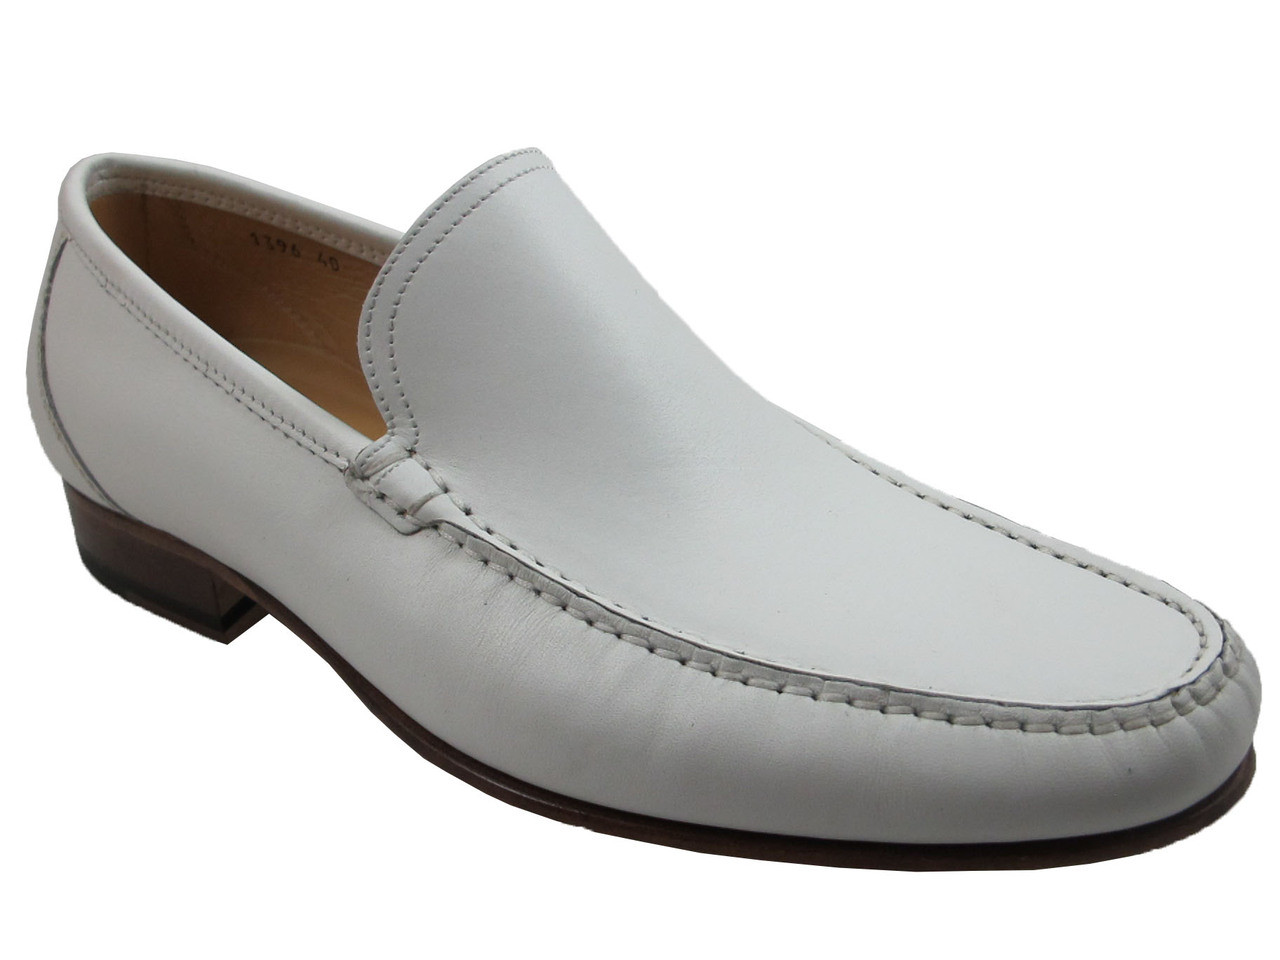 Davinci 1396 Praga Bianco Italian Slip-on Dress Loafer in White, Brown ...